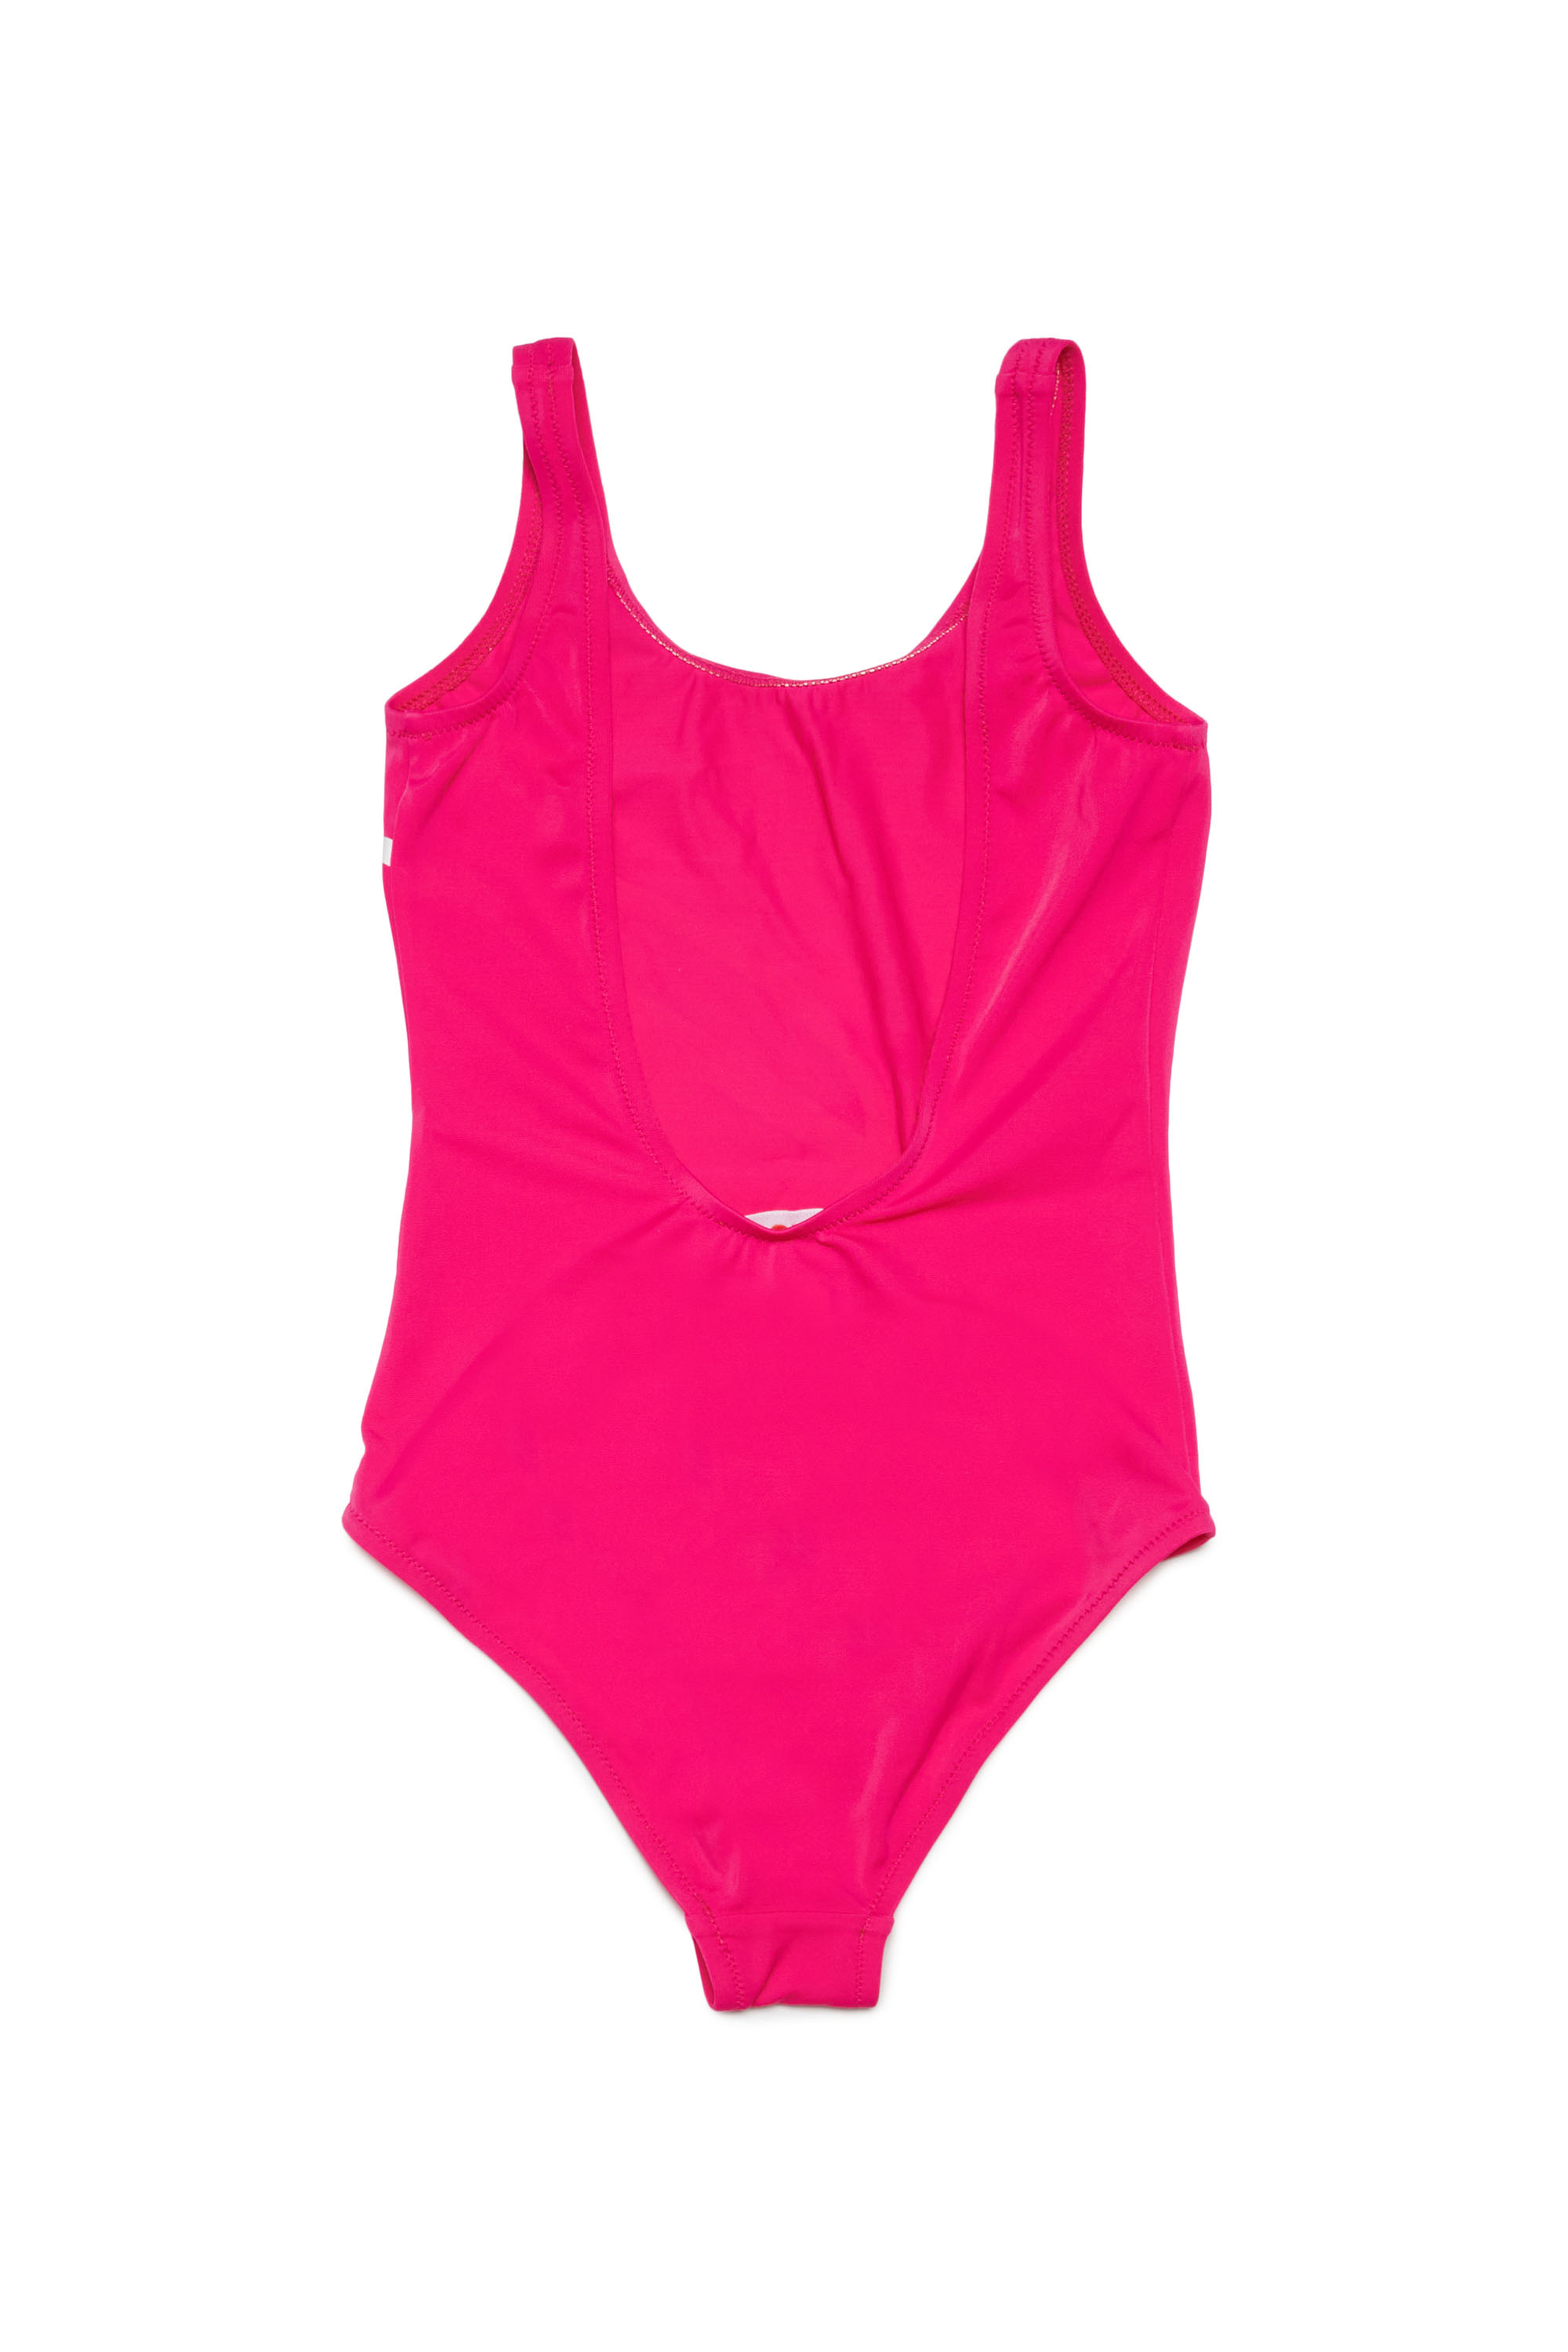 Junior Girl Beachwear: One-piece Swimsuit, Bikini